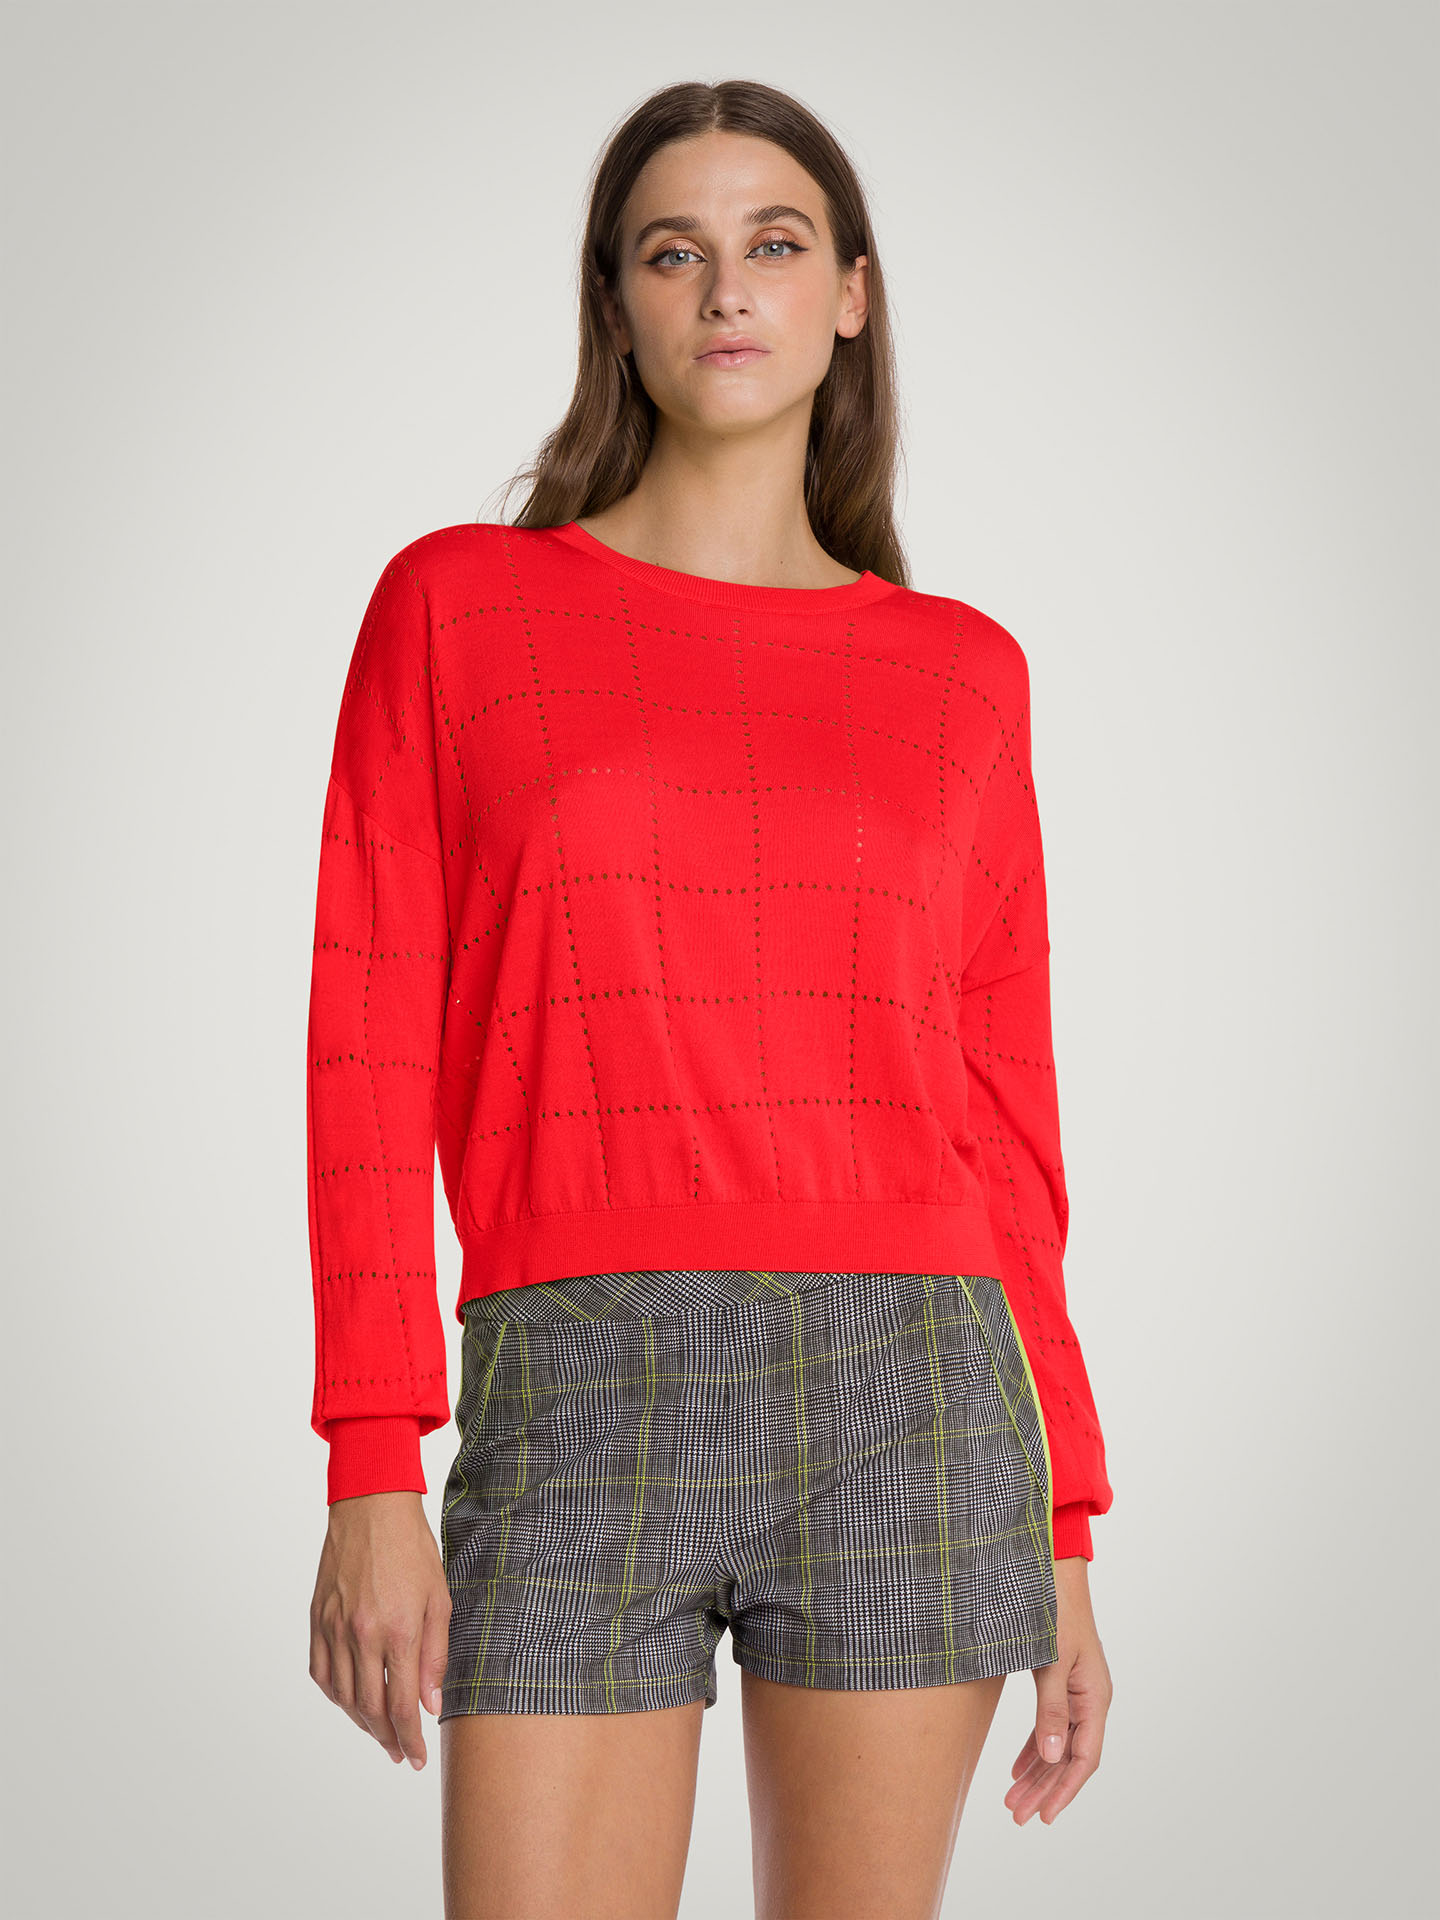 Wolford - Summer Knit Top Long Sleeves, Frau, cherry, Größe: XS günstig online kaufen